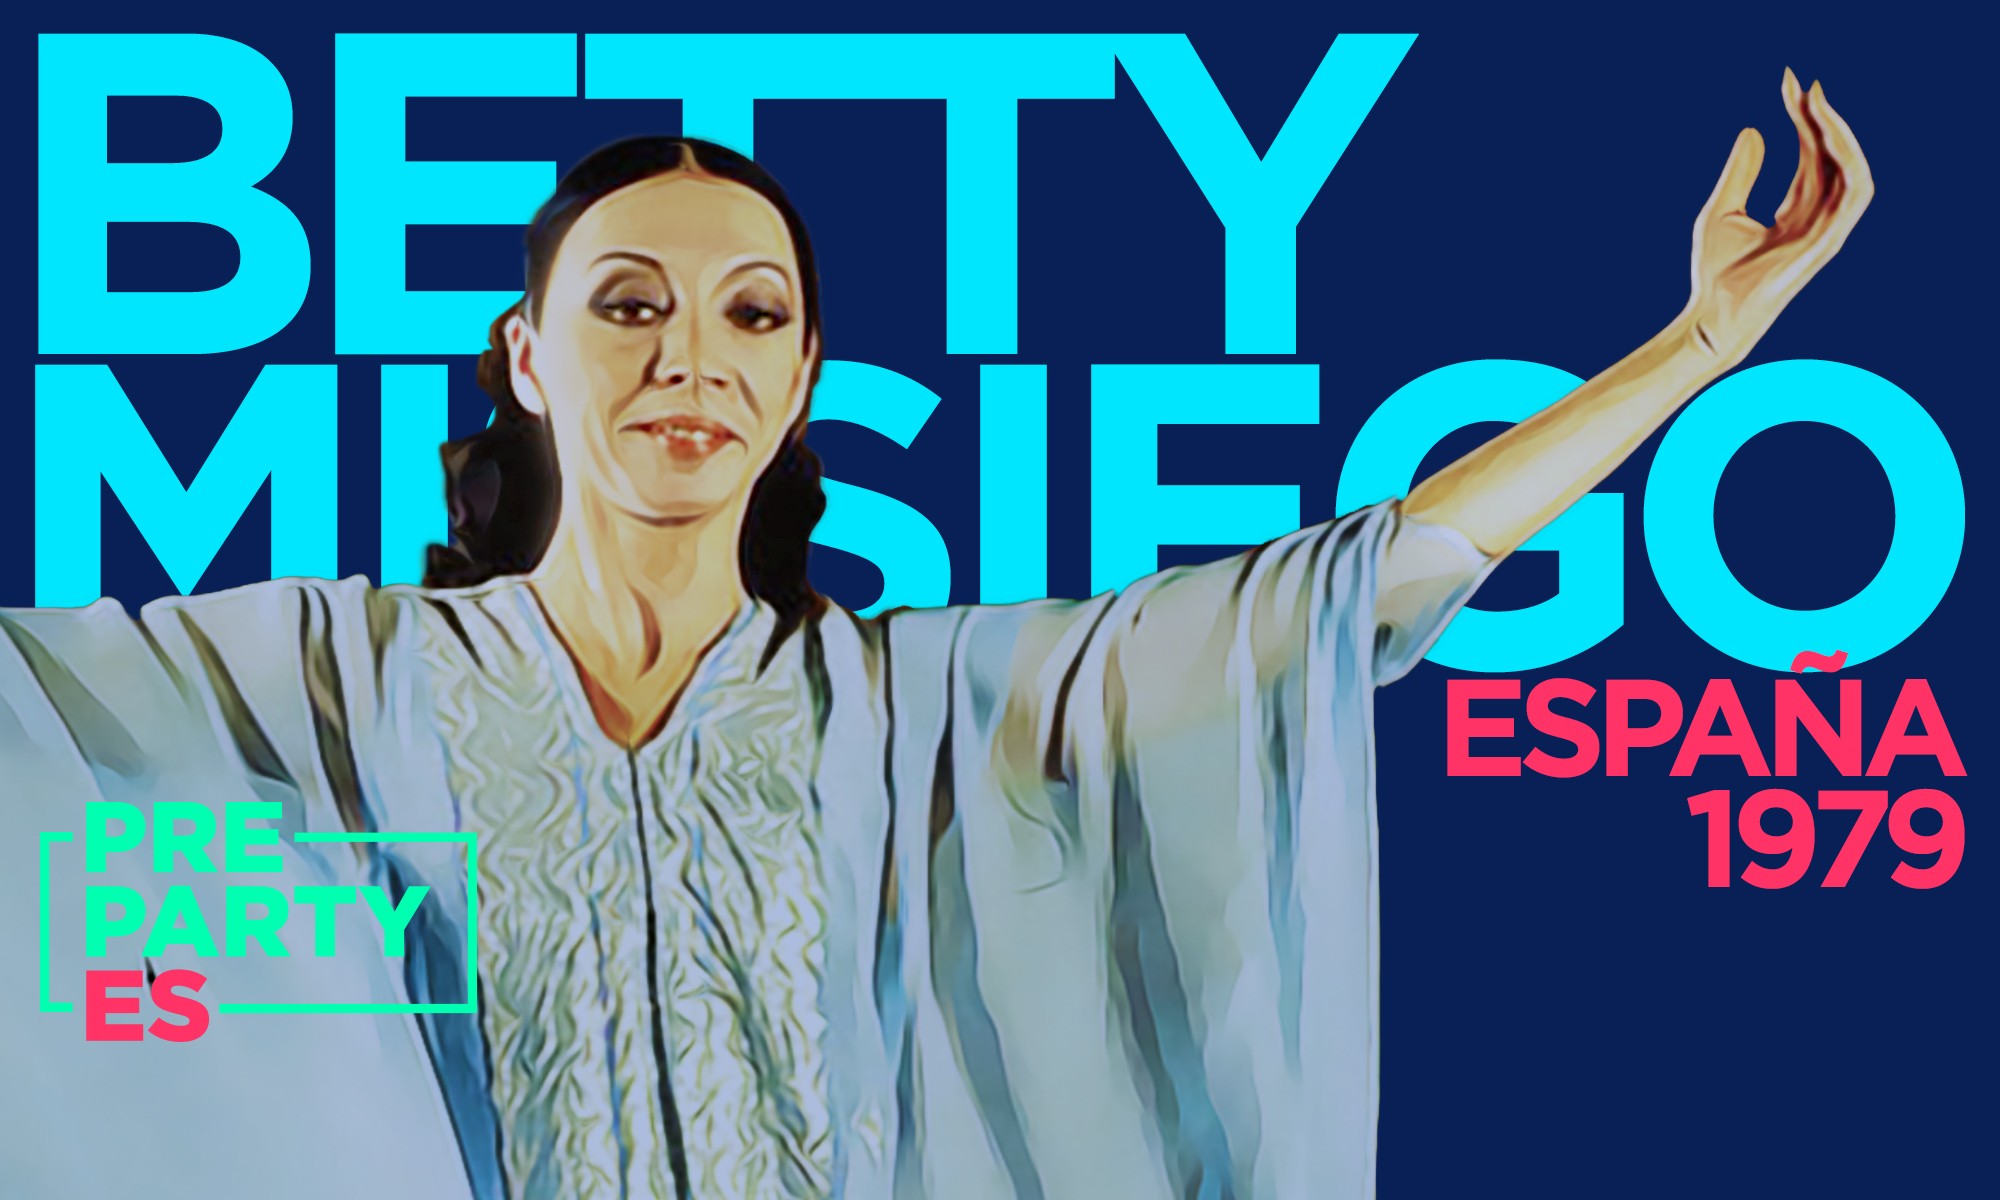 Betty Missiego recibirá un homenaje en la PrePartyES en el 40º aniversario de su participación en Eurovisión